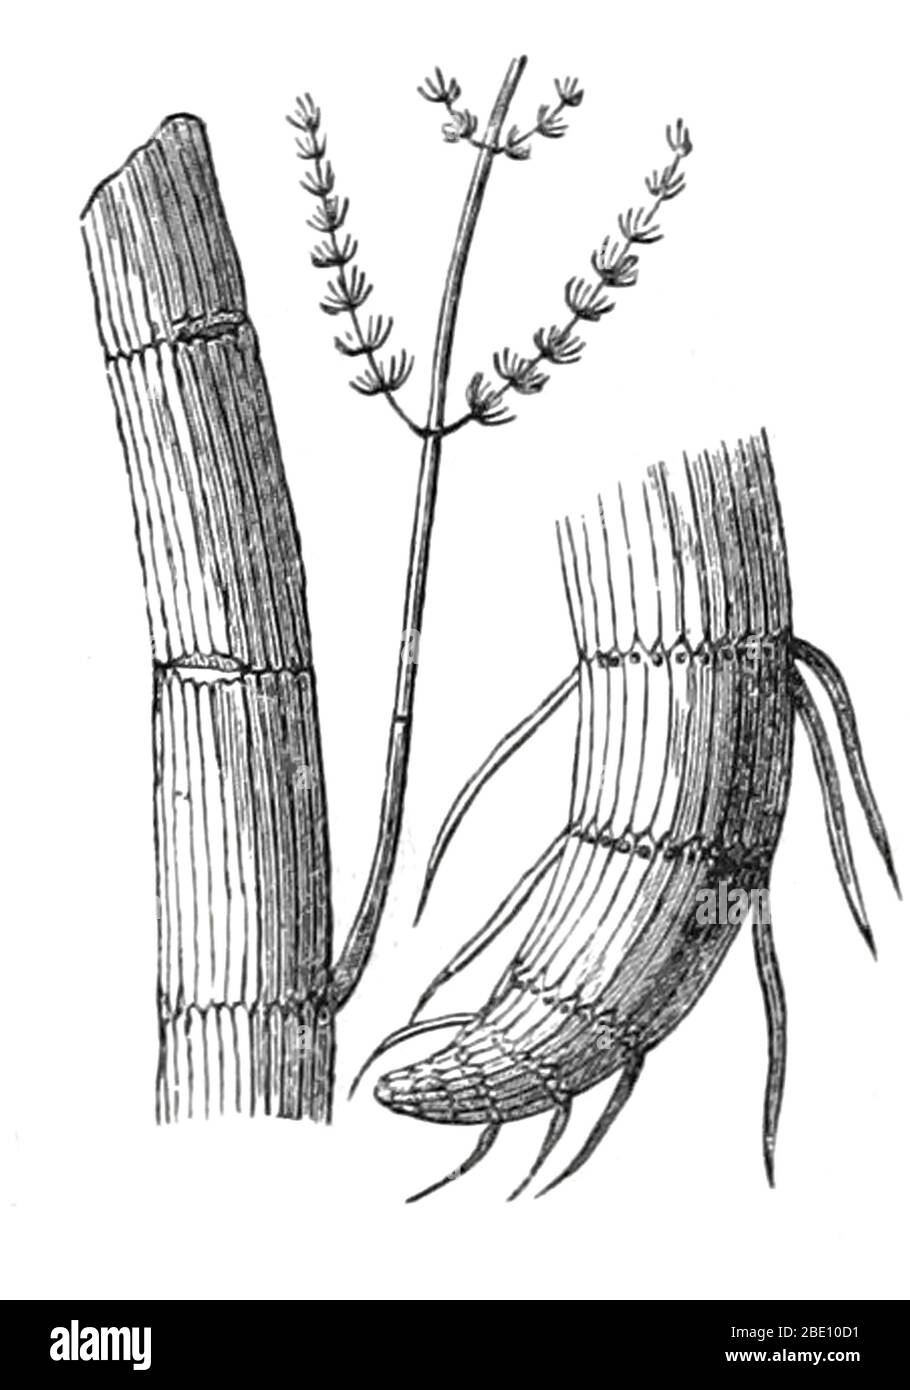 Paläozoische Calamite, einschließlich einer Wurzel (rechts). Abbildung aus dem Jahr 1872. Ein Calamit ist ein Mitglied der Linie der riesigen Schachtelhalme, die zu den Sphenopsida gehörte, ein wichtiger Teil der spätpaläozoischen Vegetation. Calamiten wuchsen, um Baumgröße Pflanzen mit aber mit whorled Ästen in modernen Schachtelhalmen gesehen zu sein. Rechts ist eine Calamit-Wurzel zu sehen. Die paläozoische Ära ist die früheste von drei geologischen Epochen des Phanerozoischen Aeons, die sich von etwa 541 bis 252.17 Millionen Jahren. Stockfoto